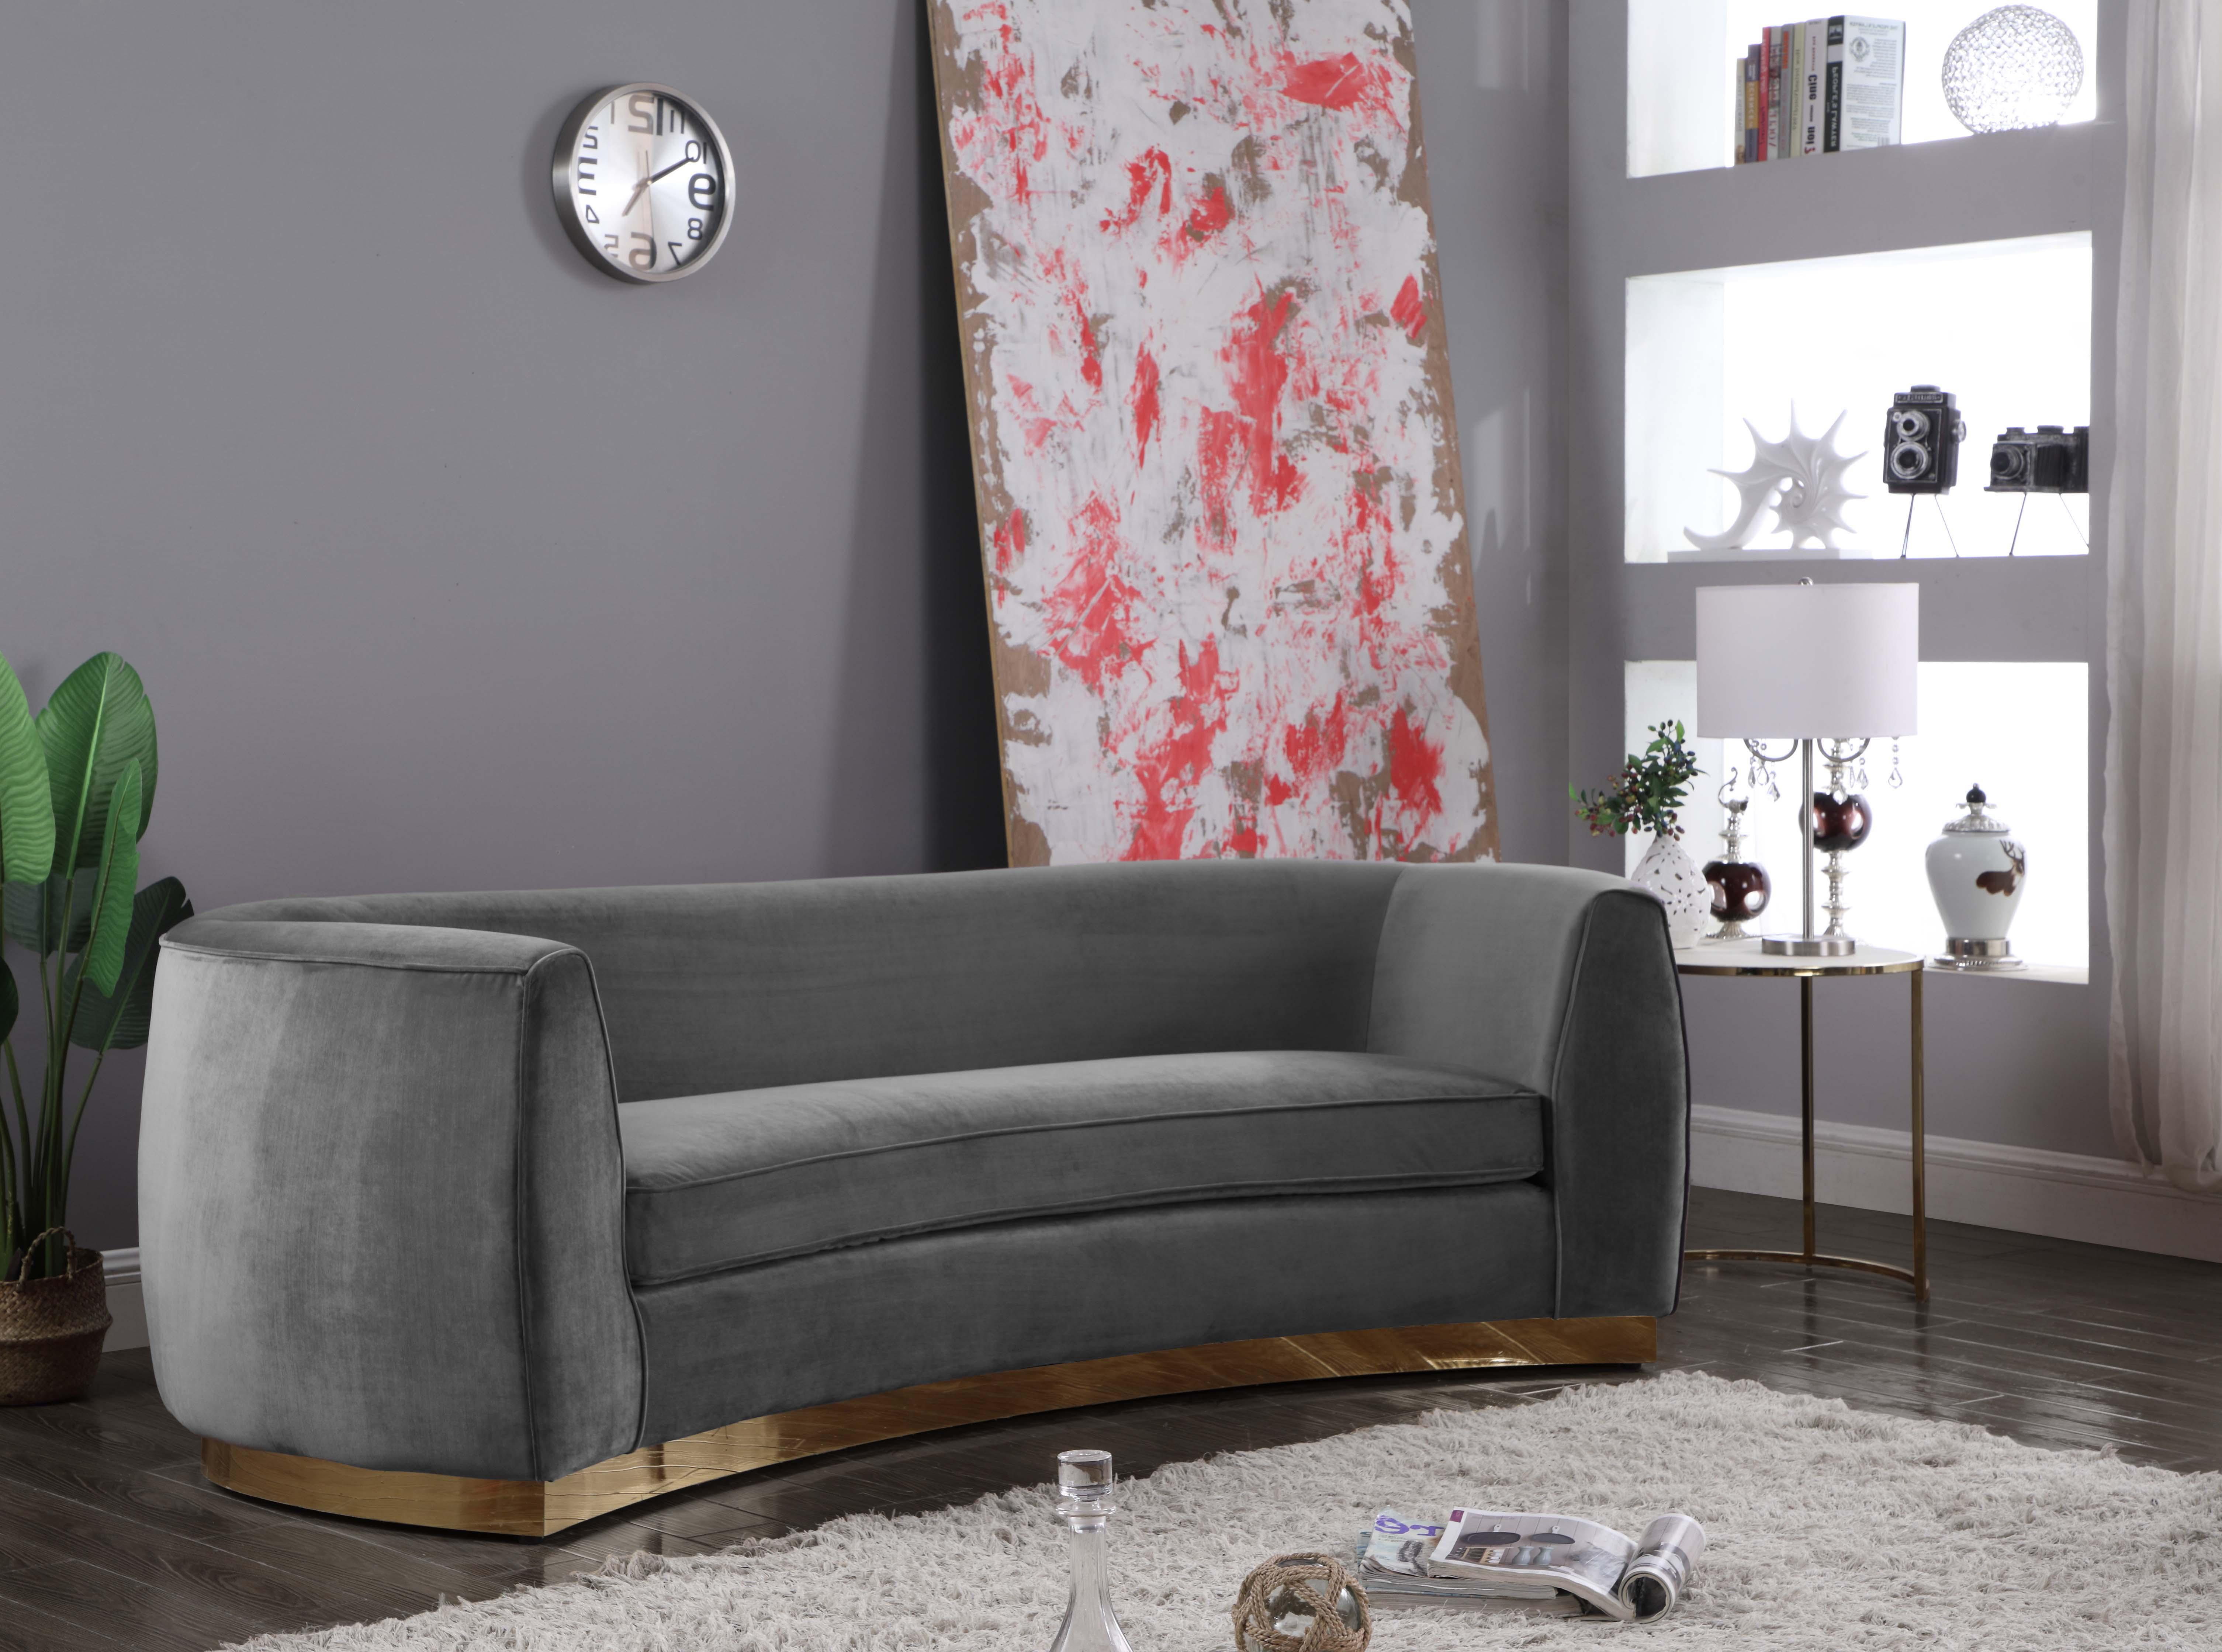 Contemporary, Modern Sofas Julian 620Grey-S 620Grey-S in Gray Soft Velvet